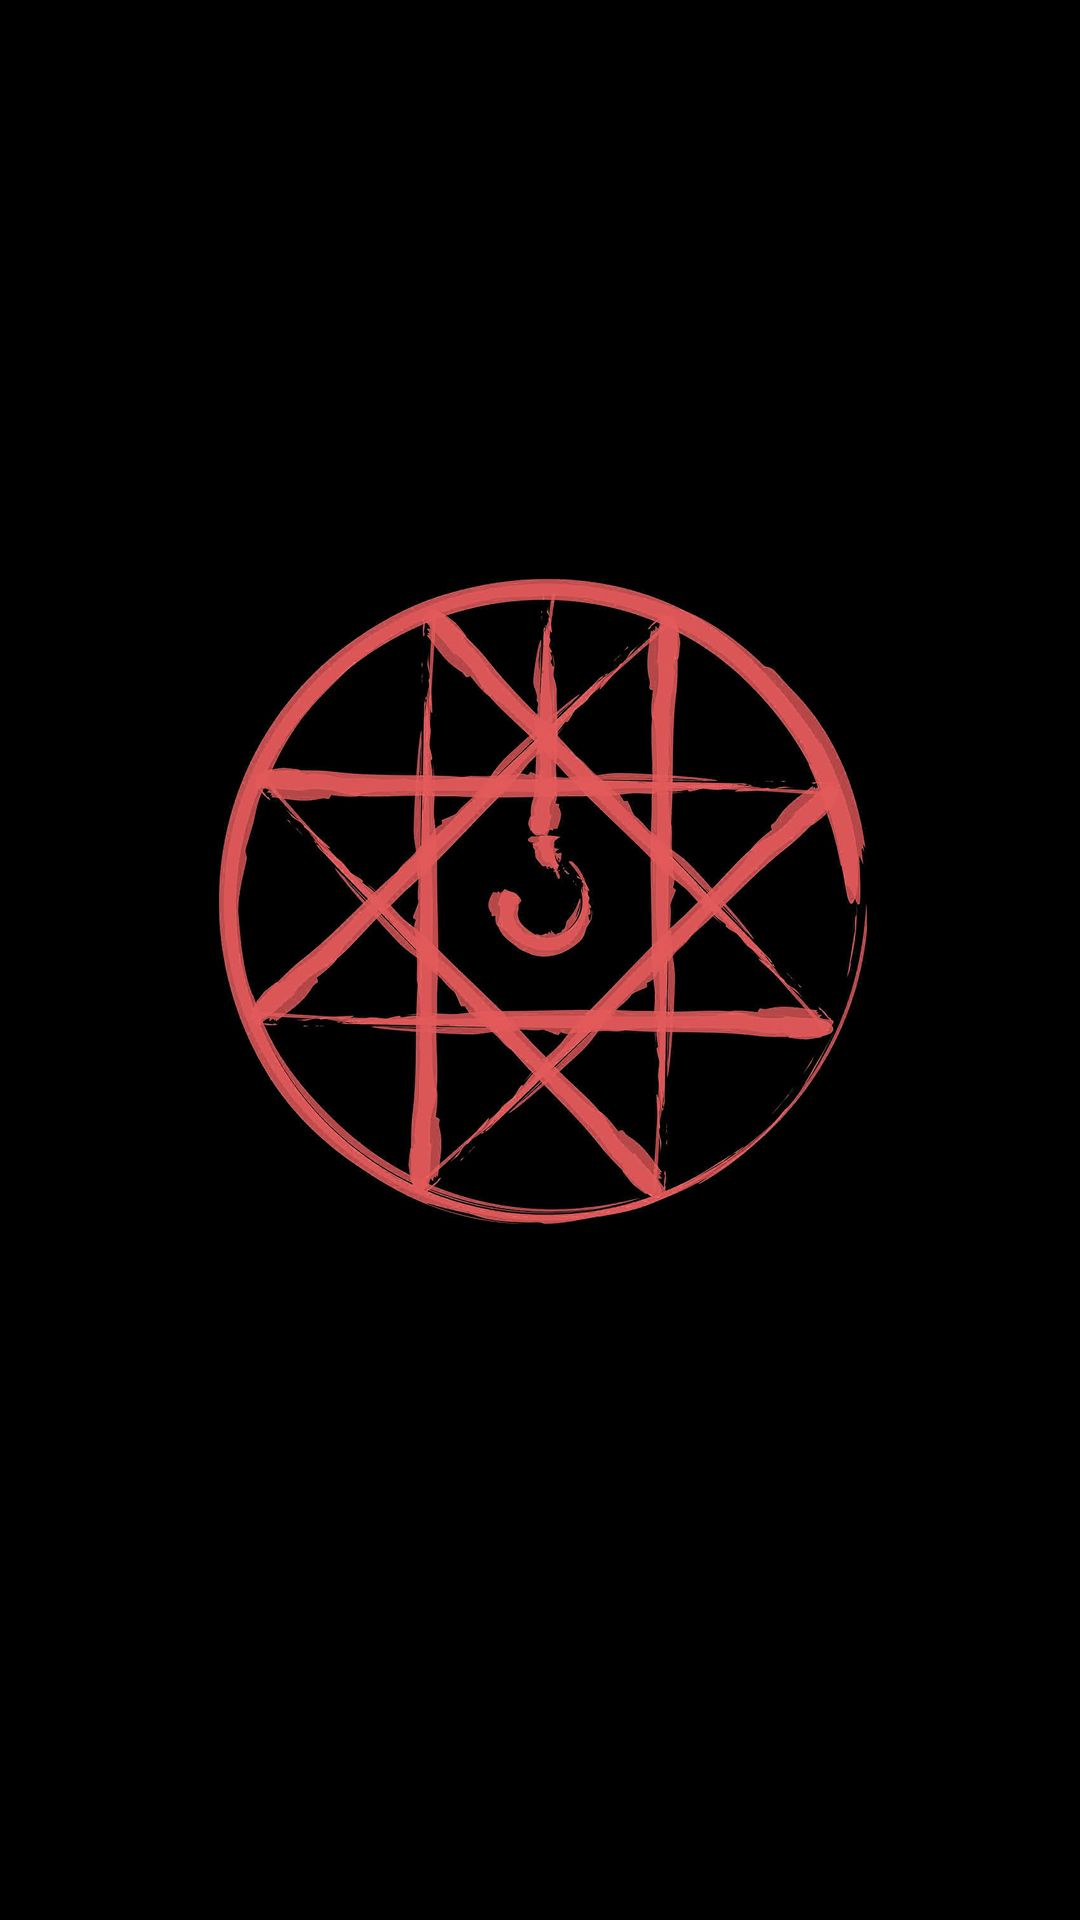 fma wallpaper”. Fullmetal alchemist, Fullmetal alchemist brotherhood, Alchemy symbols